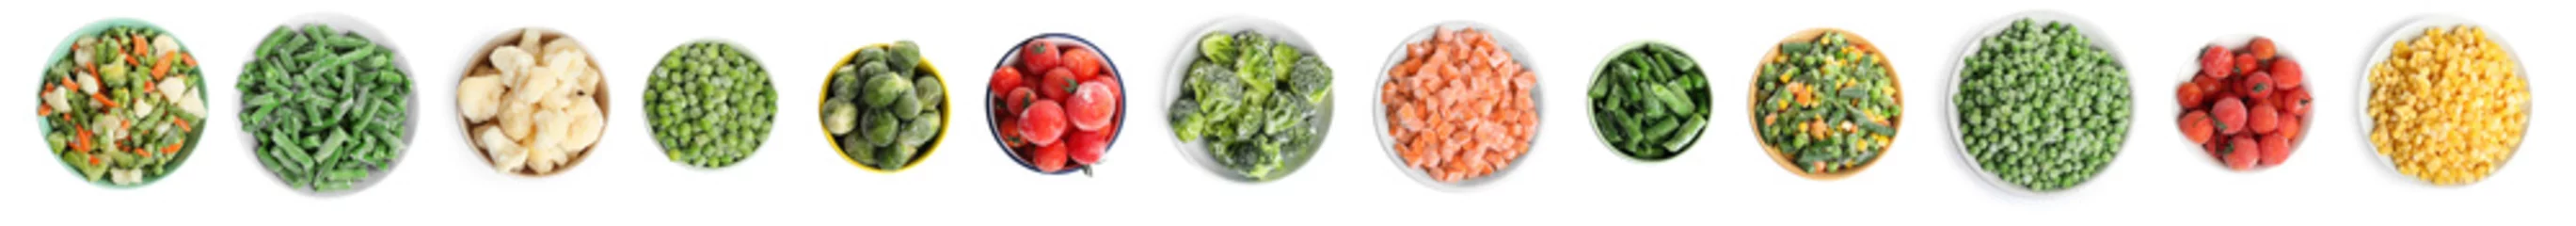 Afwasbaar behang Verse groenten Set of different frozen vegetables on white background, top view. Banner design